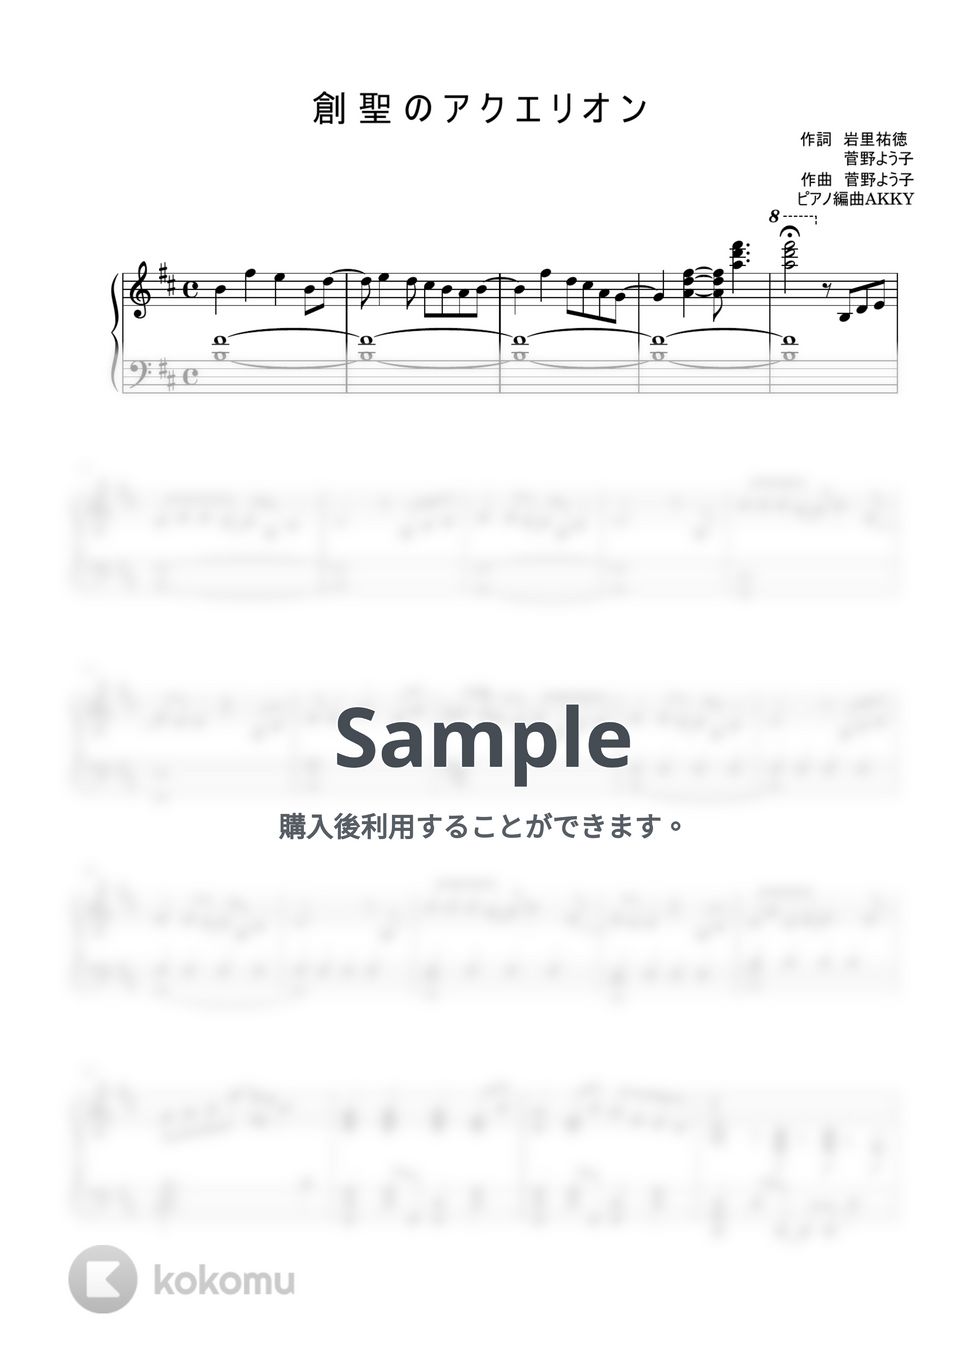 菅野よう子 - 創聖のアクエリオン (ピアノ) by AKKY